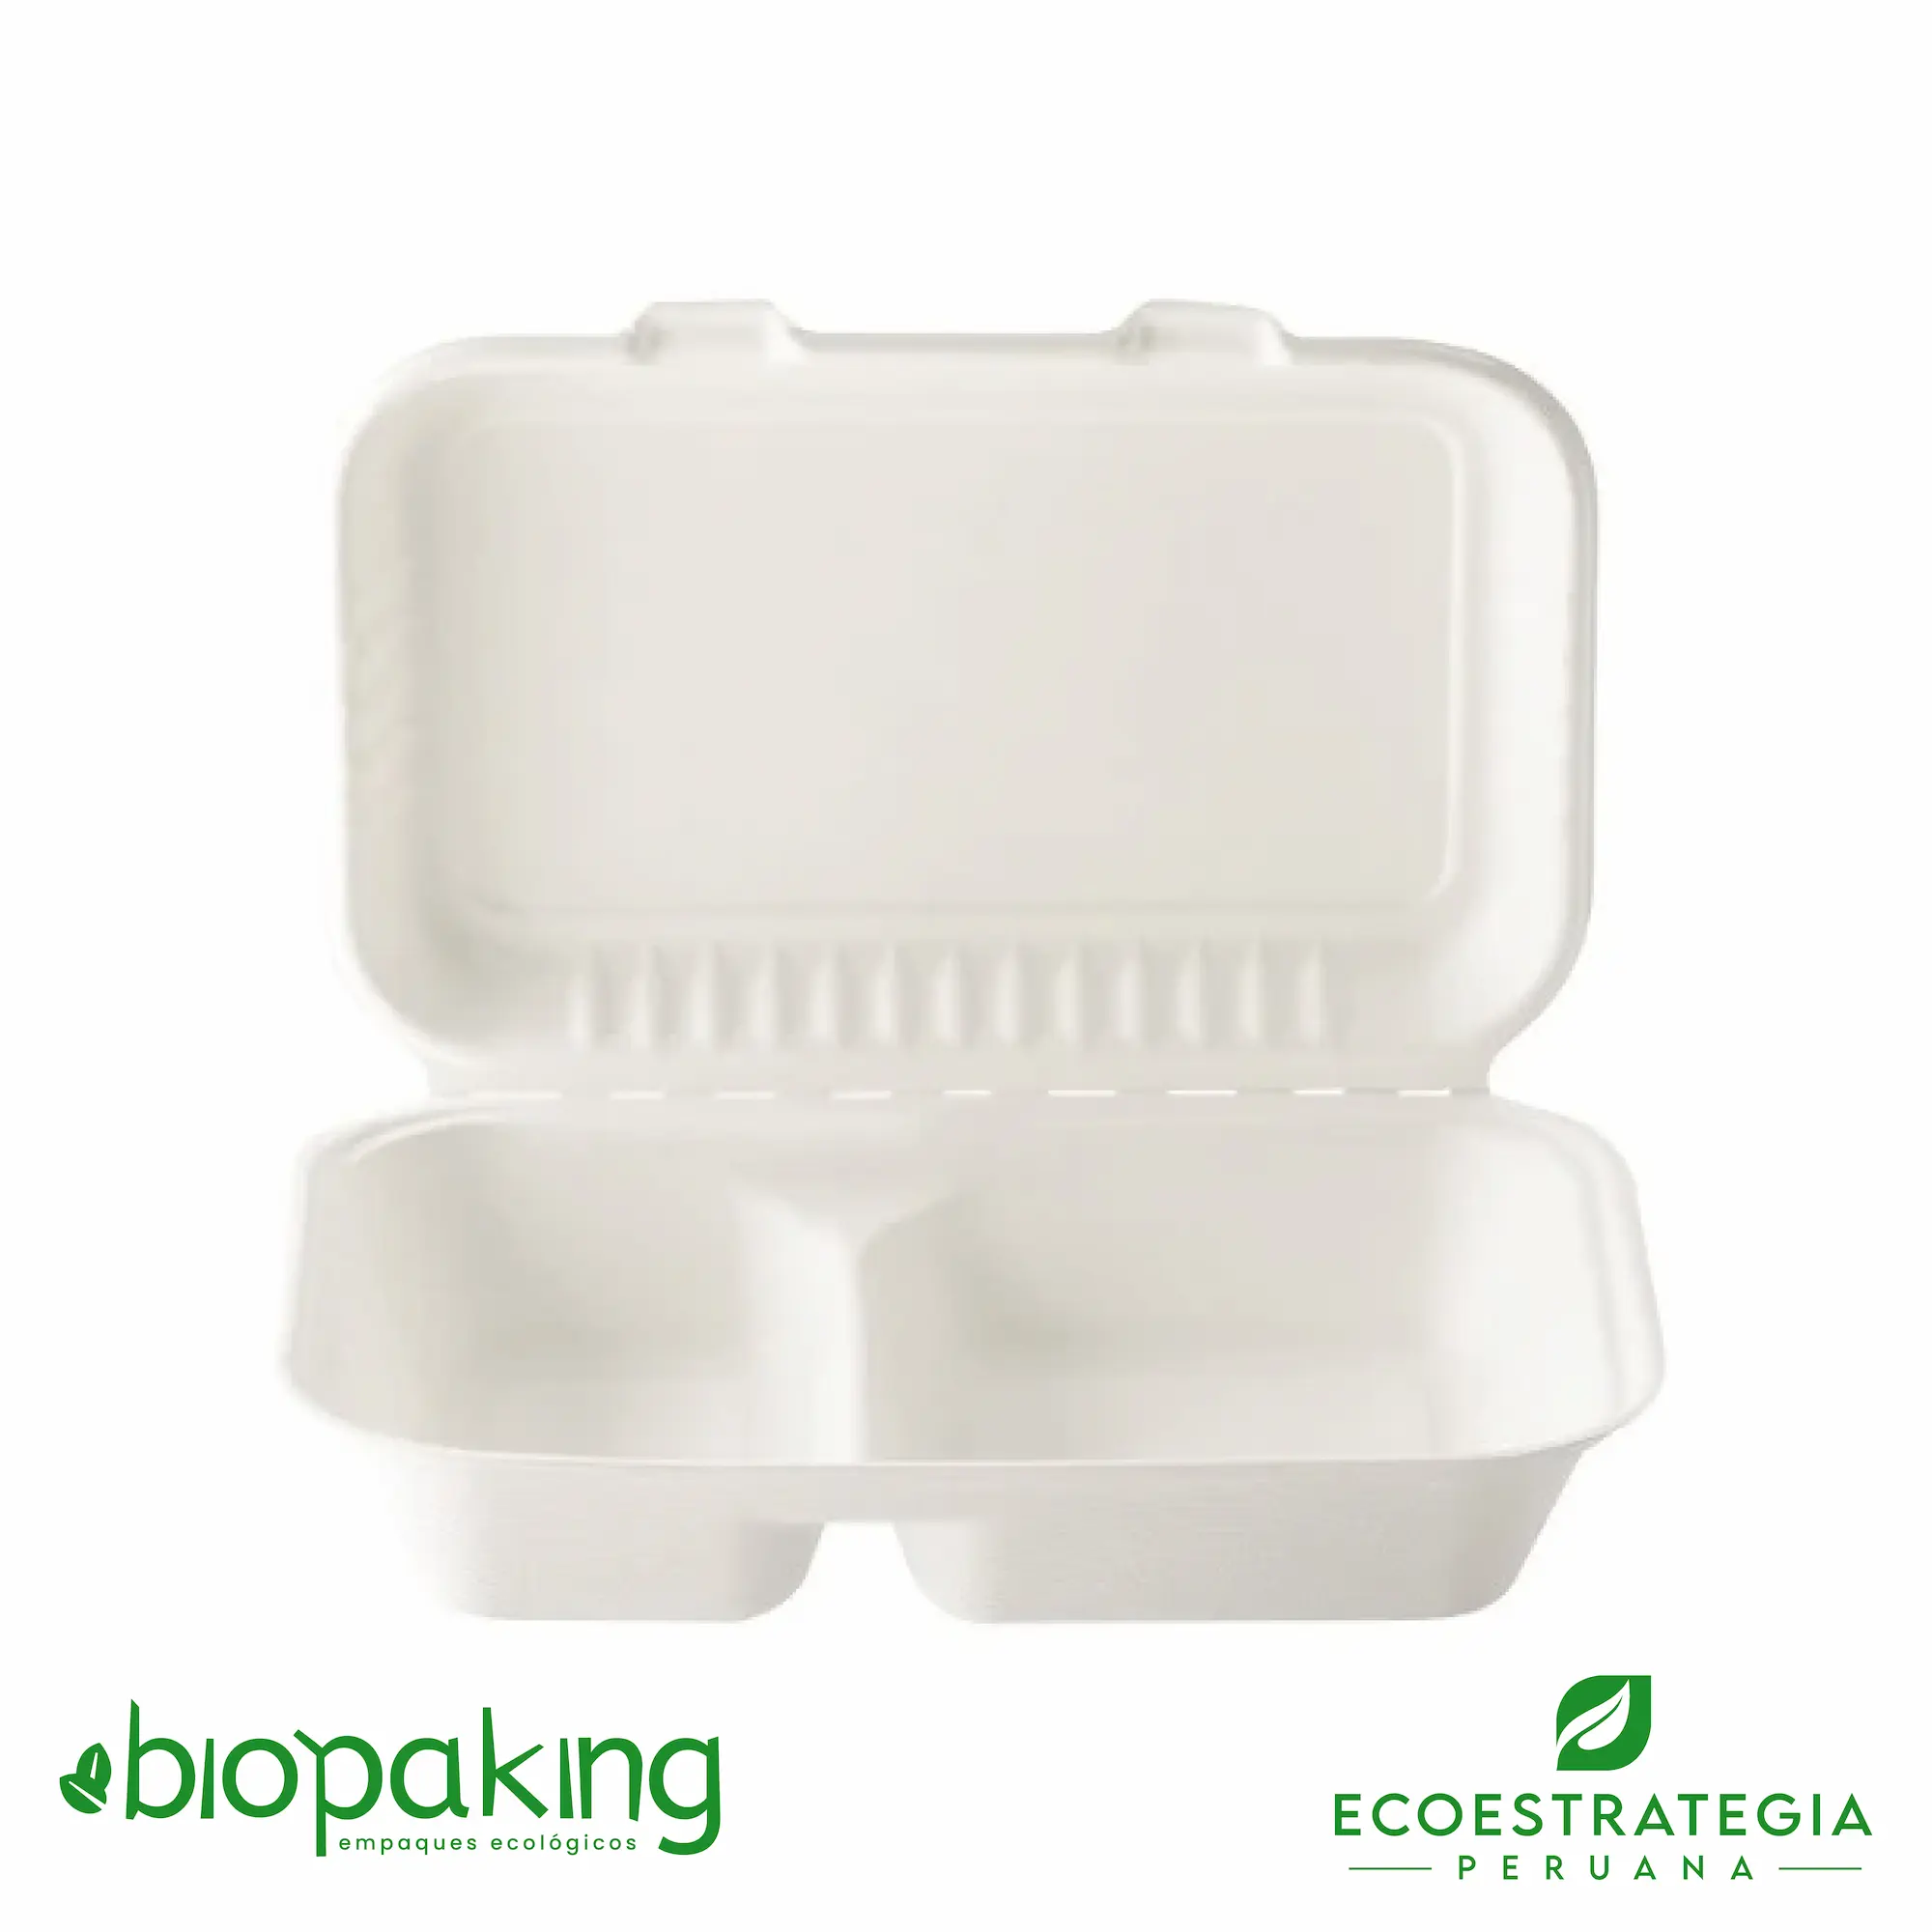 El envase biodegradable ct5 también conocido como ep06-d, es conocido como envases biodegradables ct5 con división, envases ecológicos ct5 división, envases descartables ct5 con división, envases ep06-d con división, envases para menú, CT5 con división biodegradable, fibra de caña con divisiones, contenedor cuadrado 900 ml con división, contenedor bisagra 9 x 6 x 3 con división, envase 9 x 6 -2 compartimientos pulpa de caña de azúcar, contenedor eco 900 ml con división, contenedor bisagra 900 ml con división, box mediano con división, envase biodegradable 9 x 6 con división, envase menú con división, contenedor 5 bioform fibra-ks bagazo de caña con división, Contenedor 5 fibra de caña con división, contenedor eco 900 con división, contenedor ct5 con división importadores de envases biodegradable ct5 división, distribuidores ct5 con división biodegradable, mayoristas ct5 con división biodegradable